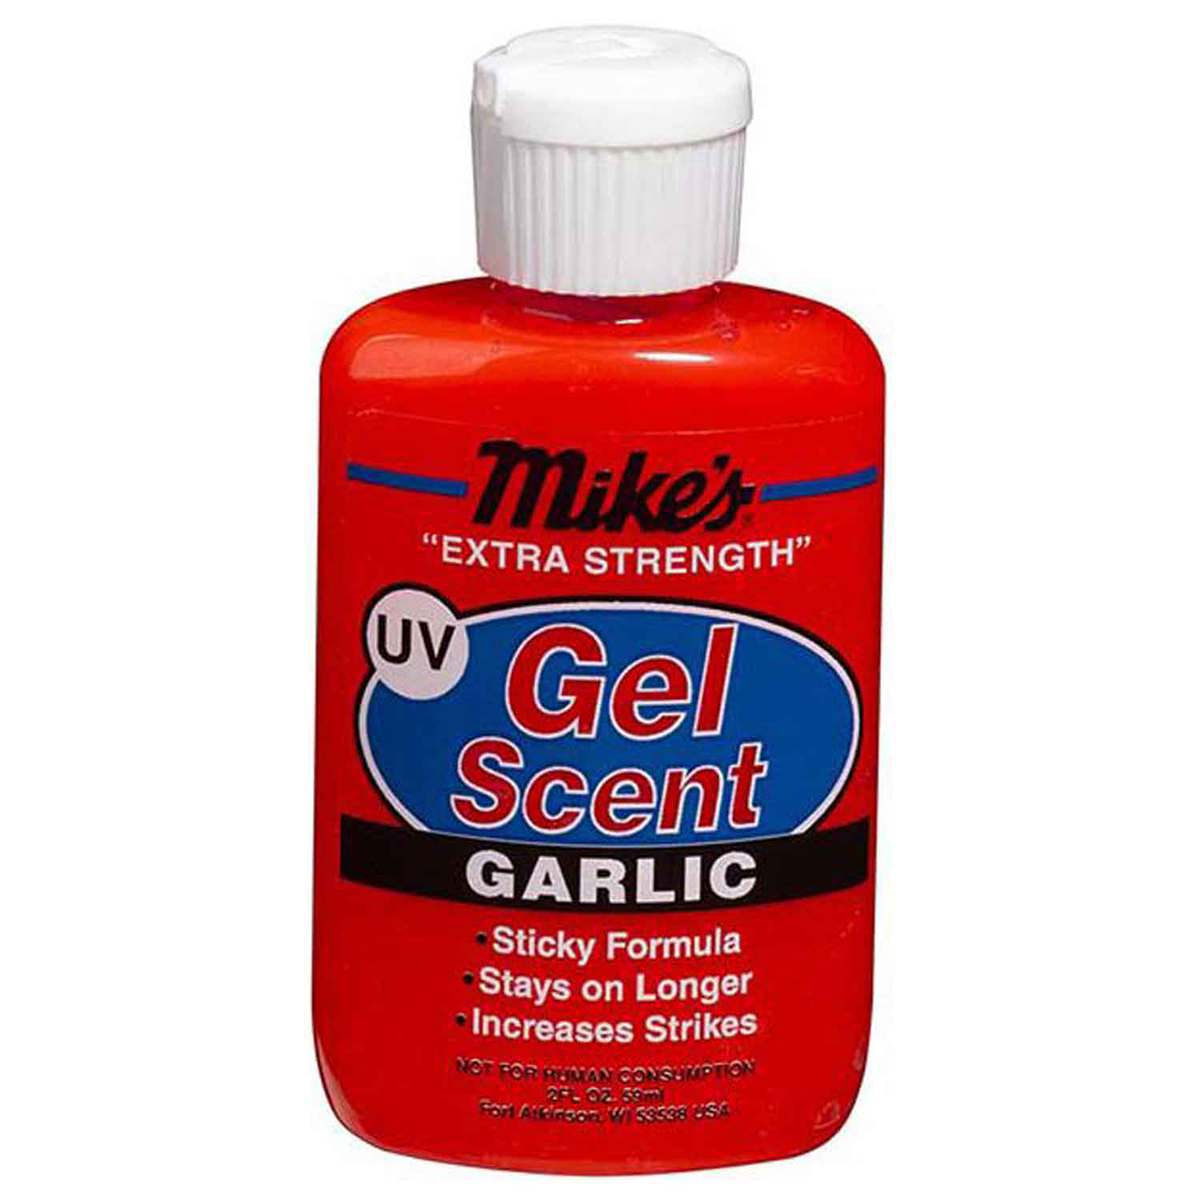 https://www.sportsmans.com/medias/atlas-mikes-uv-gel-scent-garlic-2oz-417448-1.jpg?context=bWFzdGVyfGltYWdlc3w3MDA0MnxpbWFnZS9qcGVnfGFXMWhaMlZ6TDJoaU1TOW9OalV2T1Rjek5UYzRNamsxTnpBNE5pNXFjR2N8OGMxMTUzZDFjYmRlMzJiYzk5NWJiOWM4OThmOGRhNThjNzdkNWZlMWQ4MzM4NWE2MmQ2NTRkMTUxZjAxYTU5NQ